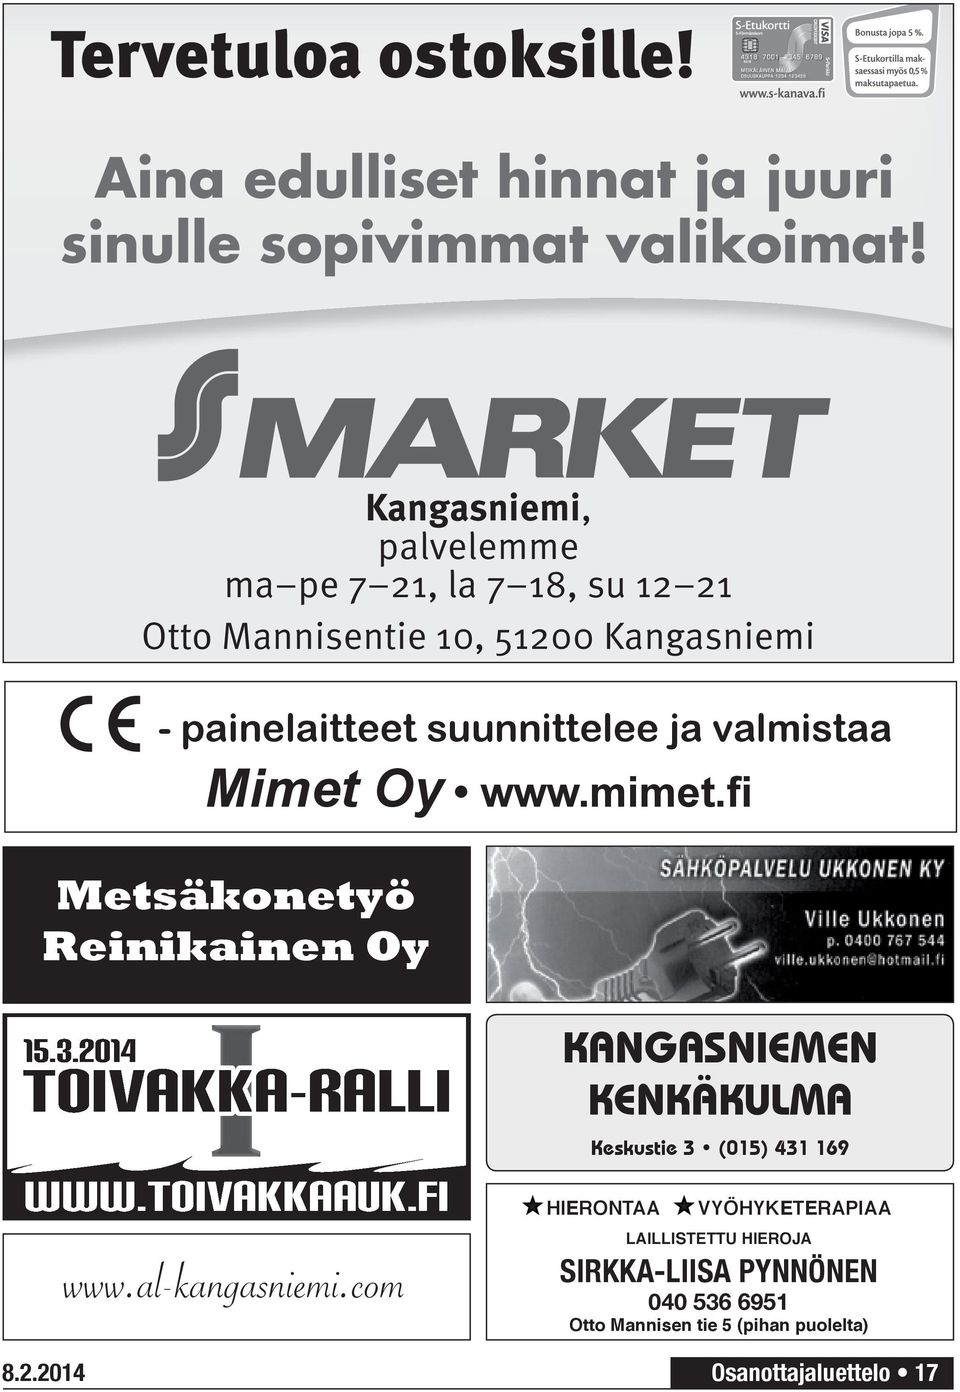 Mimet Oy www.mimet.fi Metsäkonetyö Reinikainen Oy 15.3.2014 I TOIVAKKA-RALLI WWW.TOIVAKKAAUK.FI 8.2.2014 www.al-kangasniemi.